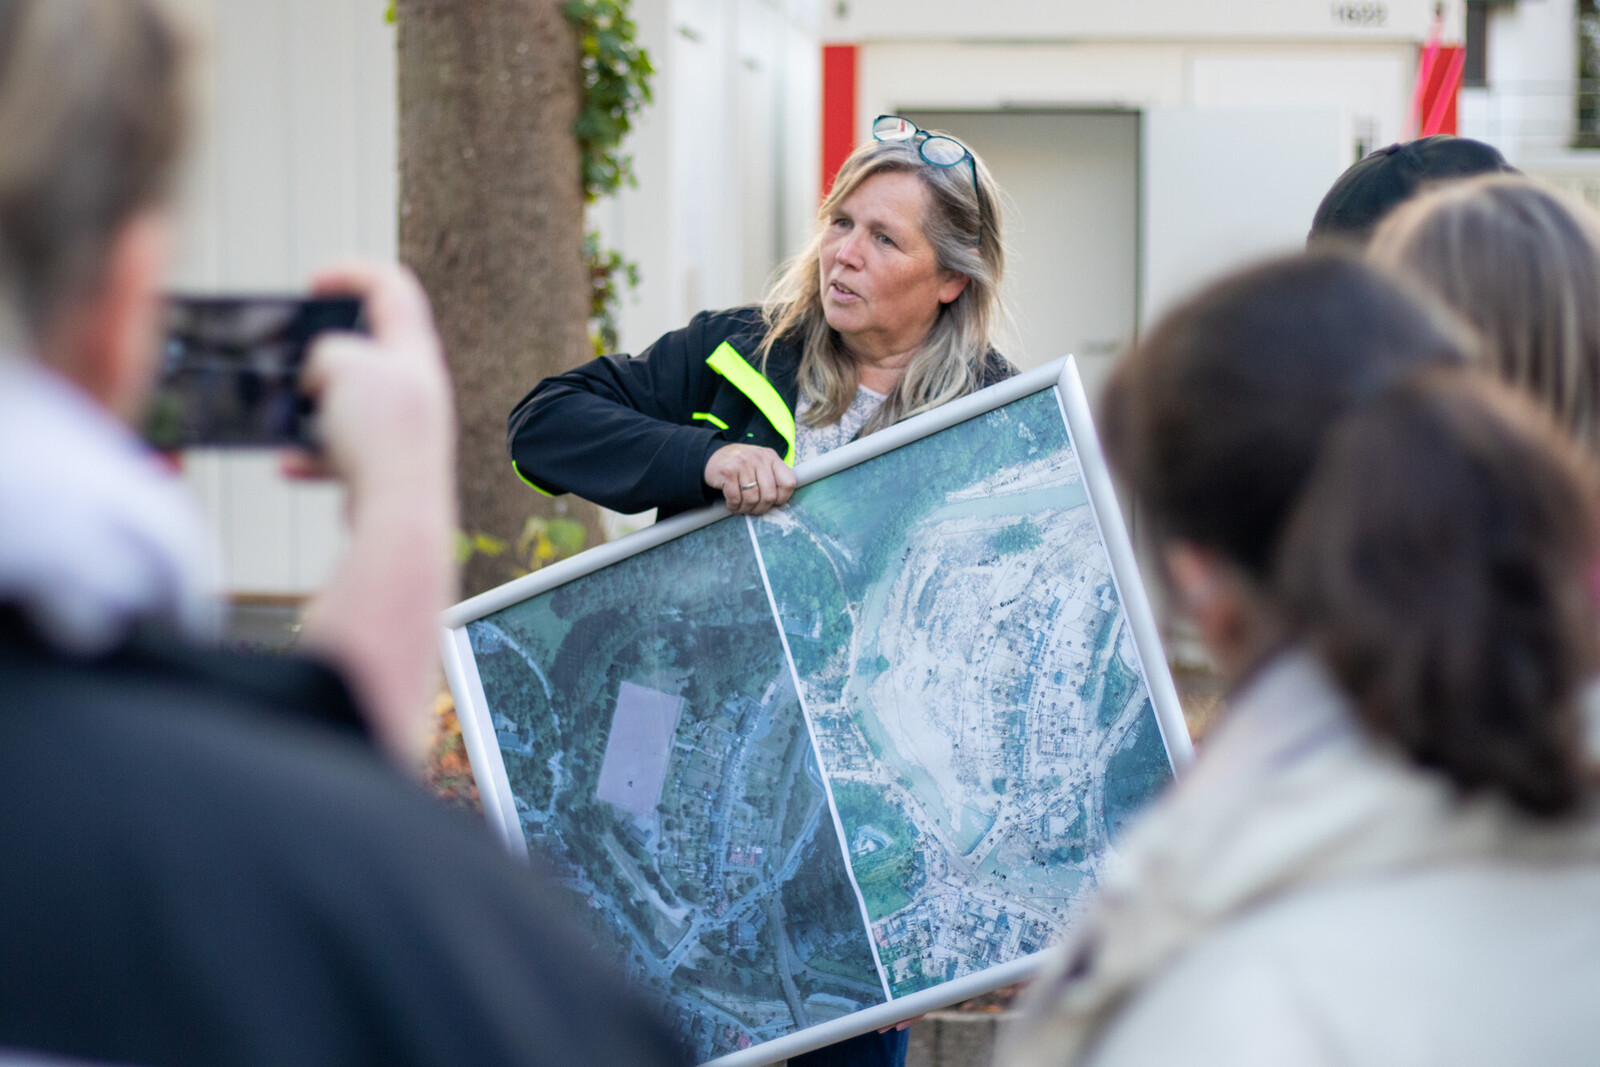 Eine Frau zeigt auf einer Karte das Hochwassergebiet vor und nach der Katastrophe